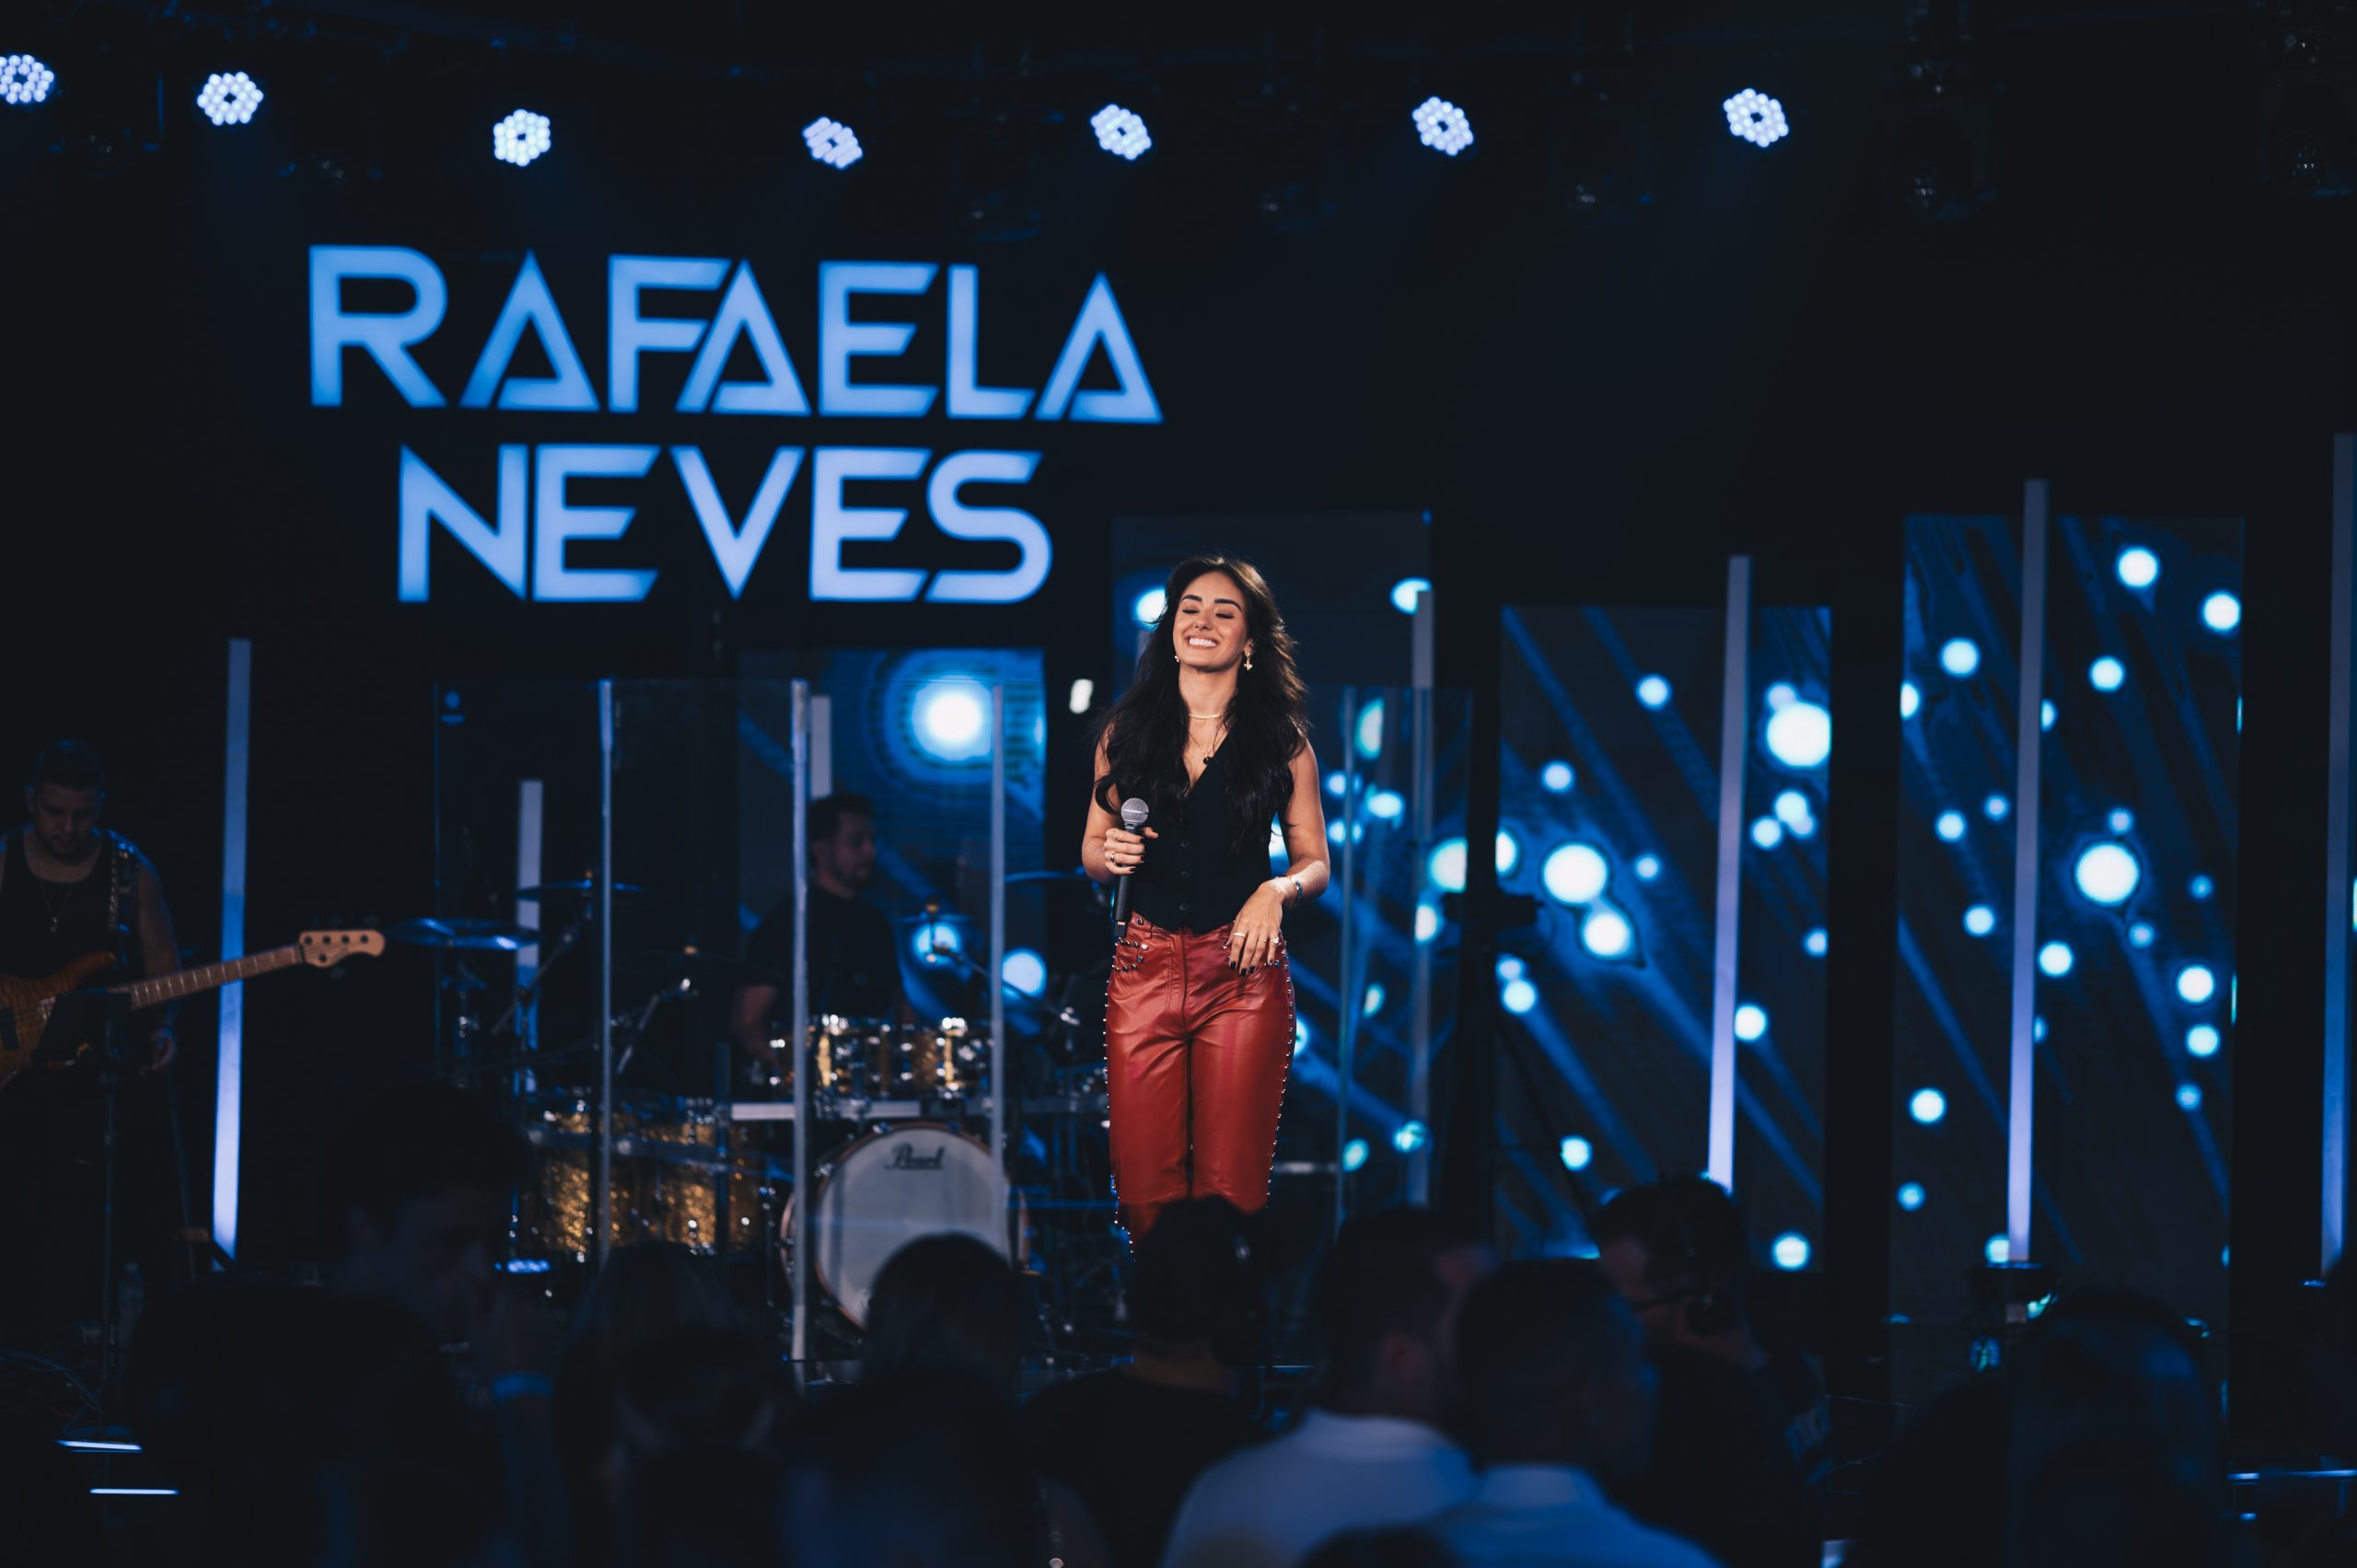 Rafaela Neves